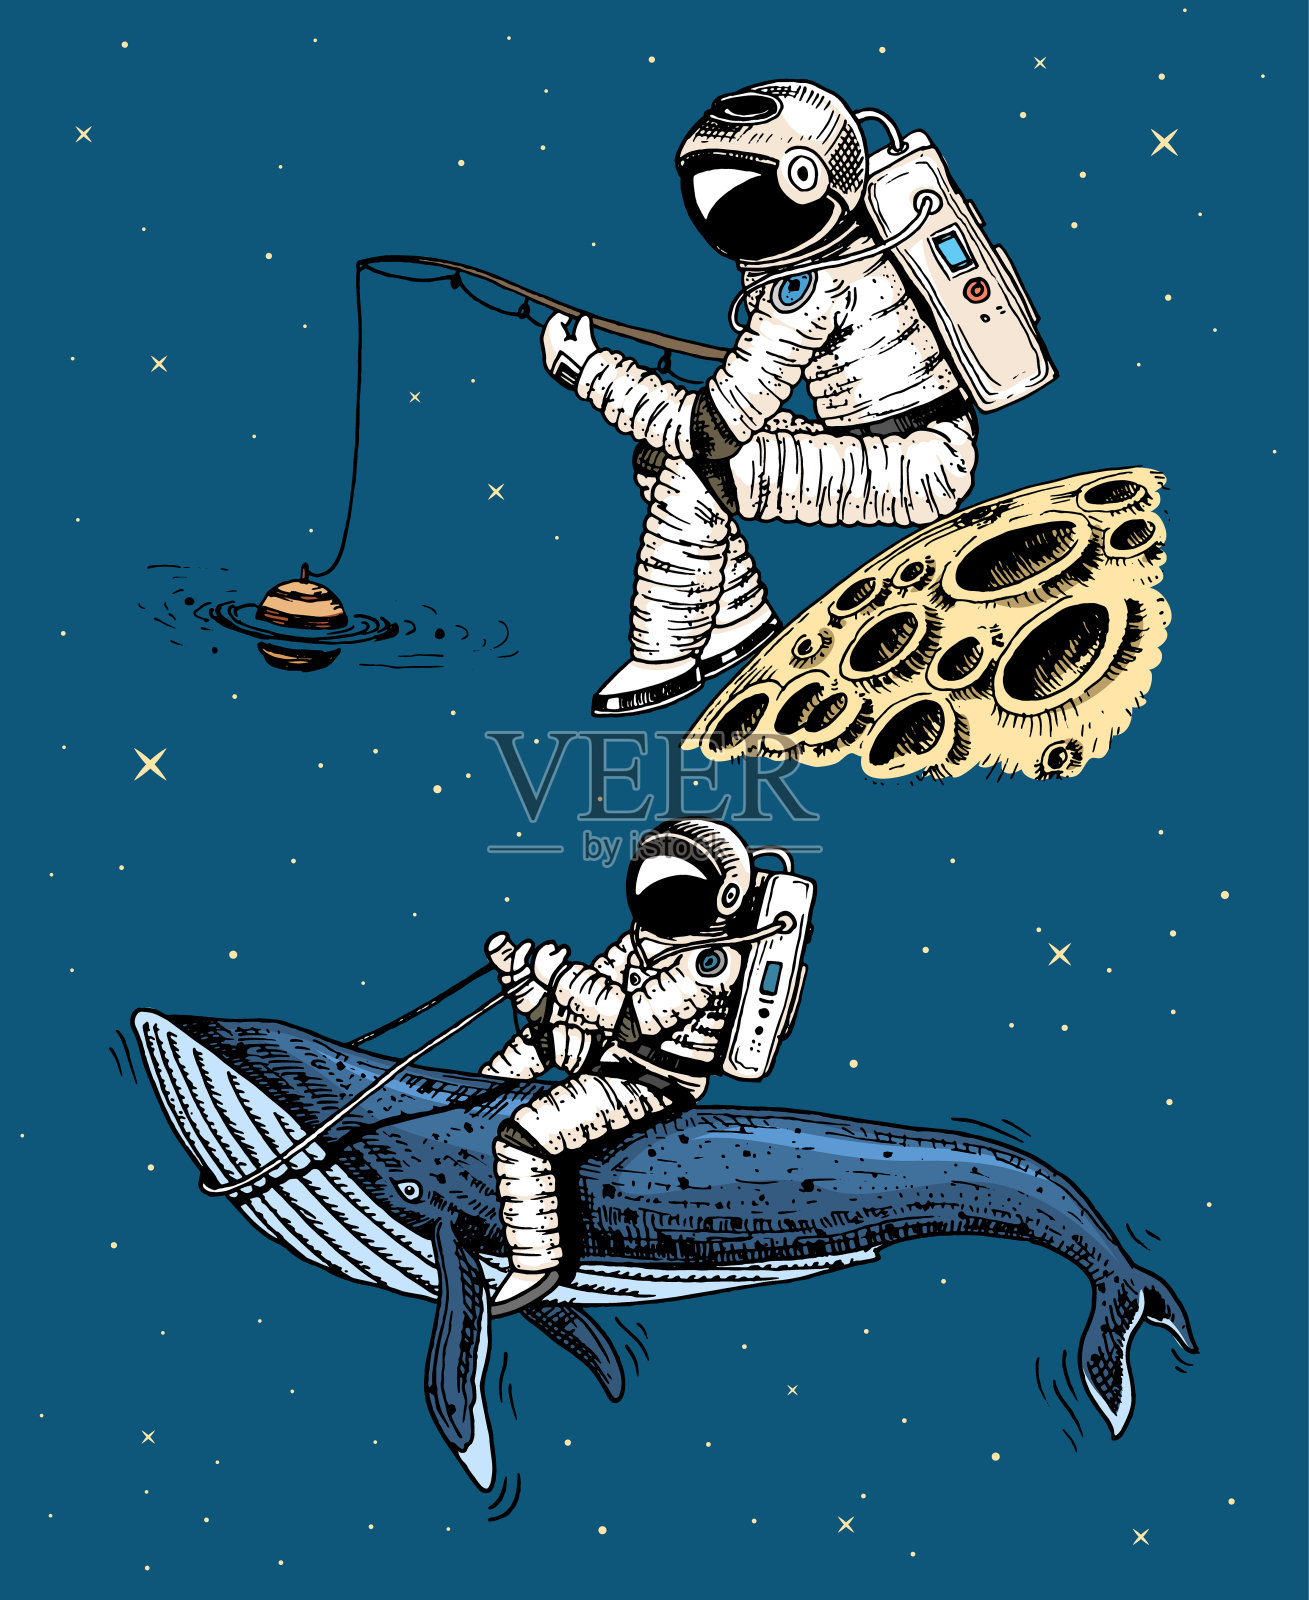 宇航员在月球上拿着钓竿。天文星系空间。有趣的宇航员探索冒险。用旧素描手绘雕刻。太阳系行星中的蓝鲸插画图片素材